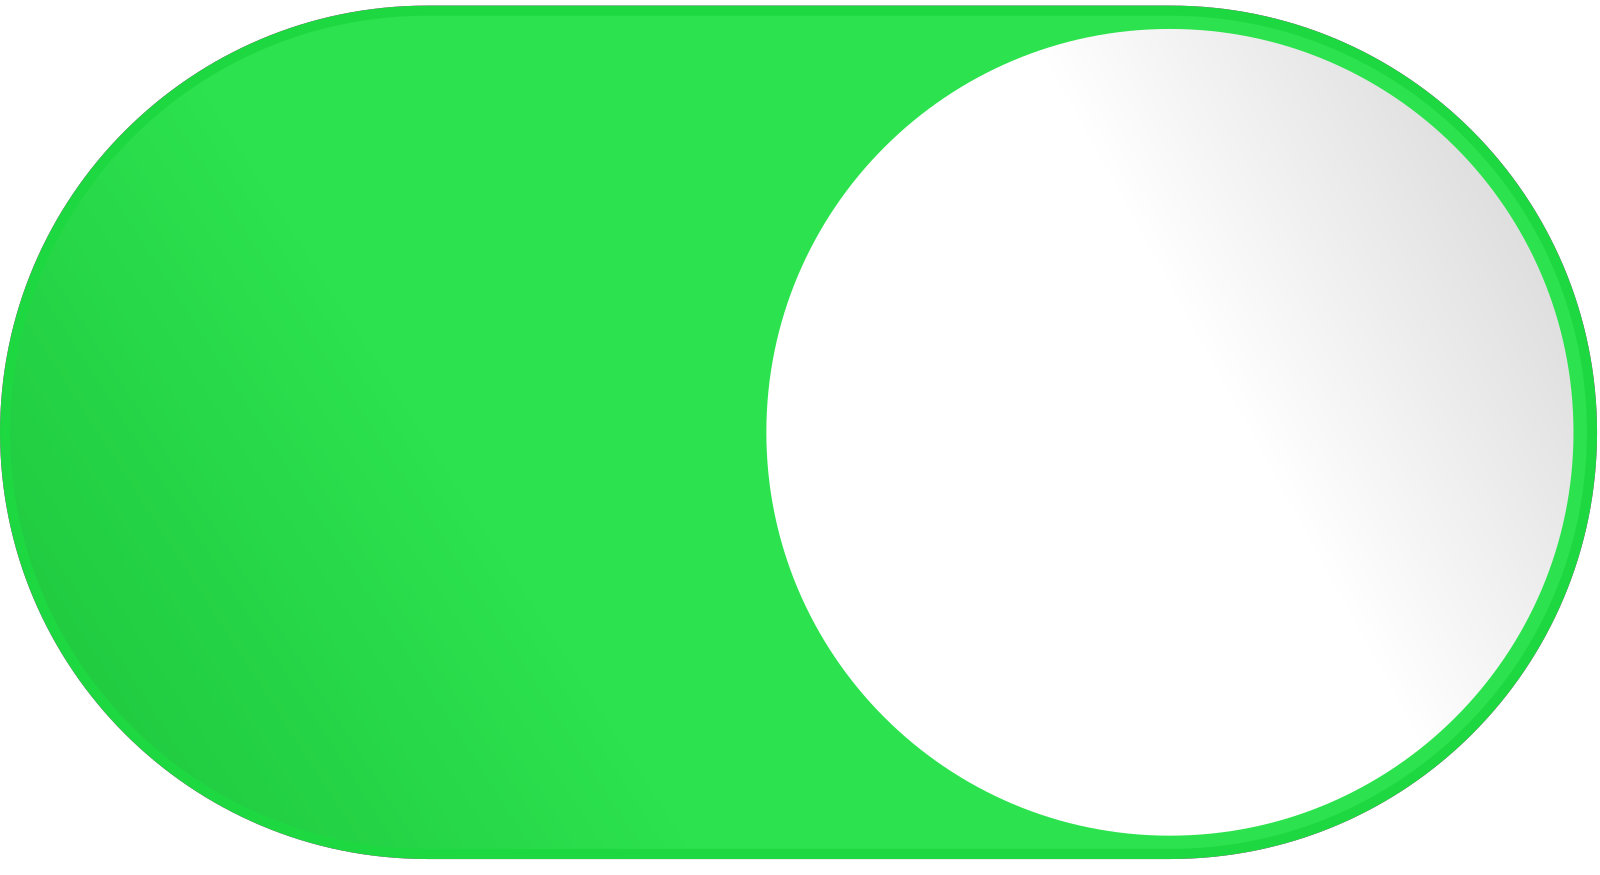 Ios button. Зеленая кнопка. Логотип в овале. Ползунок вкл выкл. Переключатель IOS.